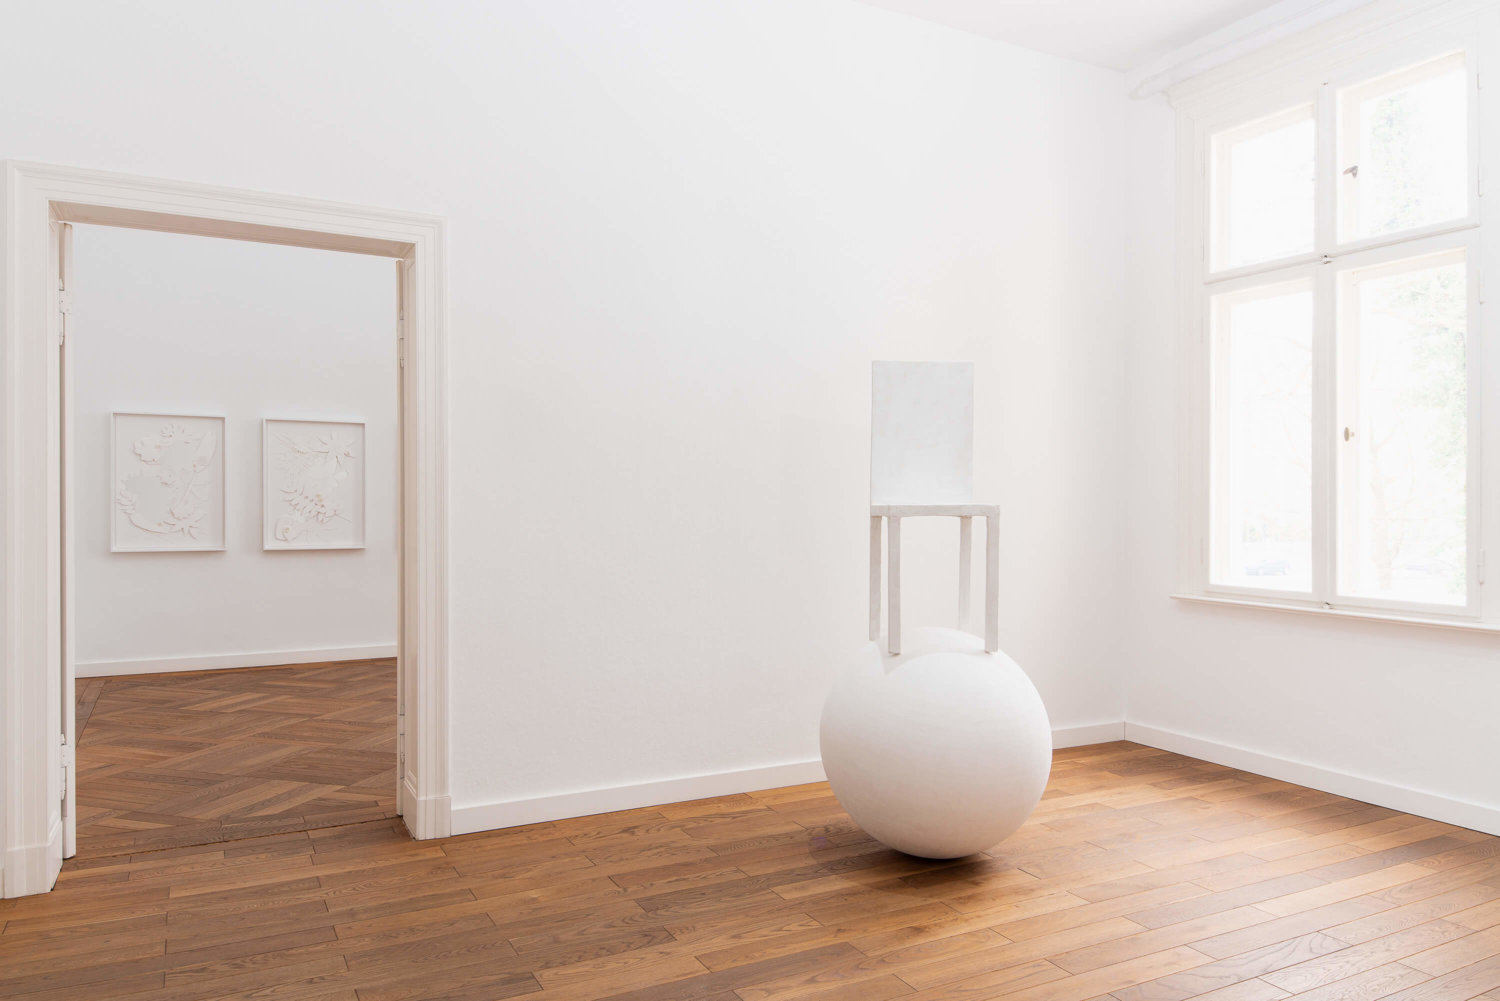 Ausstellungsansicht in der Villa Schöningen, im Vordergrund ein Stuhl, der auf einer weißen Kugeln balanciert, im Hintergrund gerahmte Papier-Arbeiten an einer weißen Wand